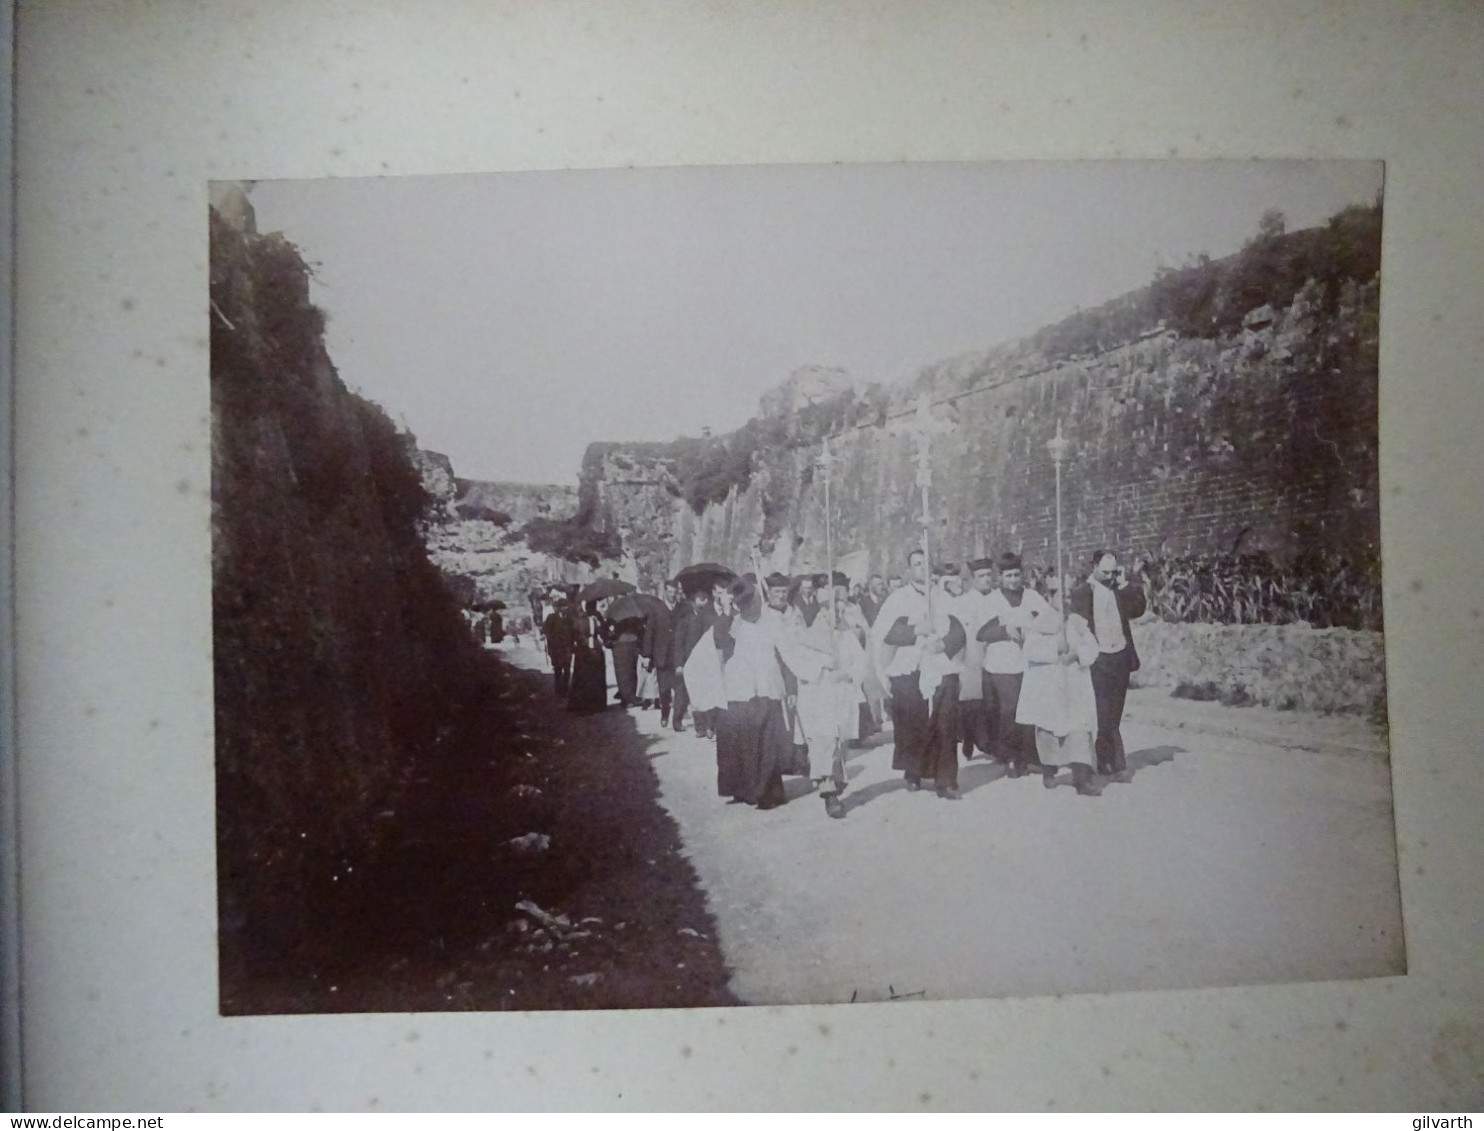 Album photo famille Pellet d'Anglade, vacances Biarritz, corrida, fêtes Fontarrabie, Luchon... 146 photos vers 1895-1905